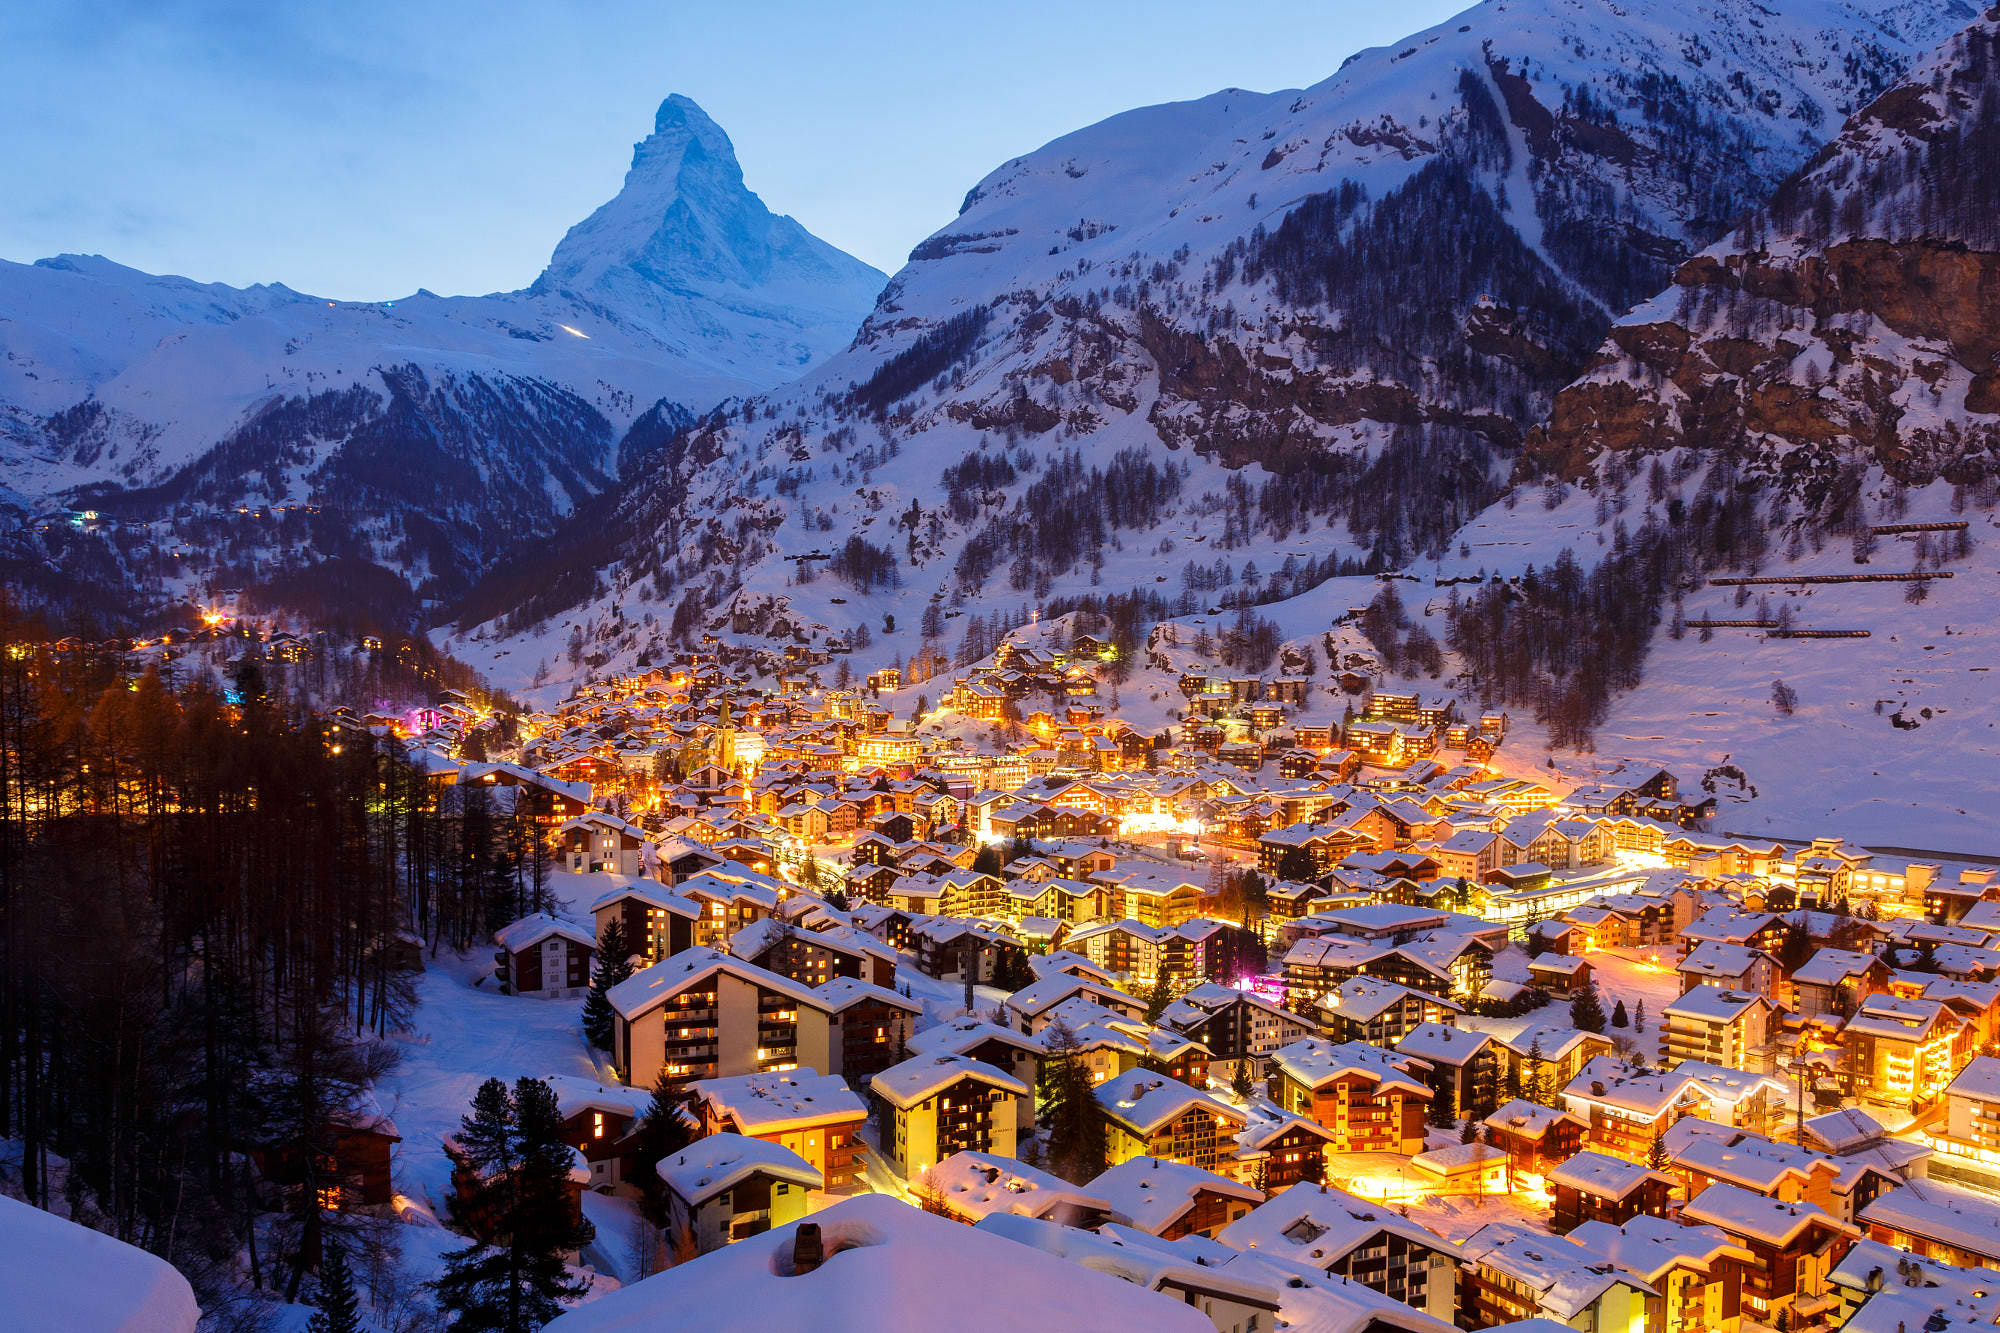 Du lịch năm châu: Làng Zermatt Thụy Sĩ - điểm đến hấp dẫn chìm trong tuyết  trắng